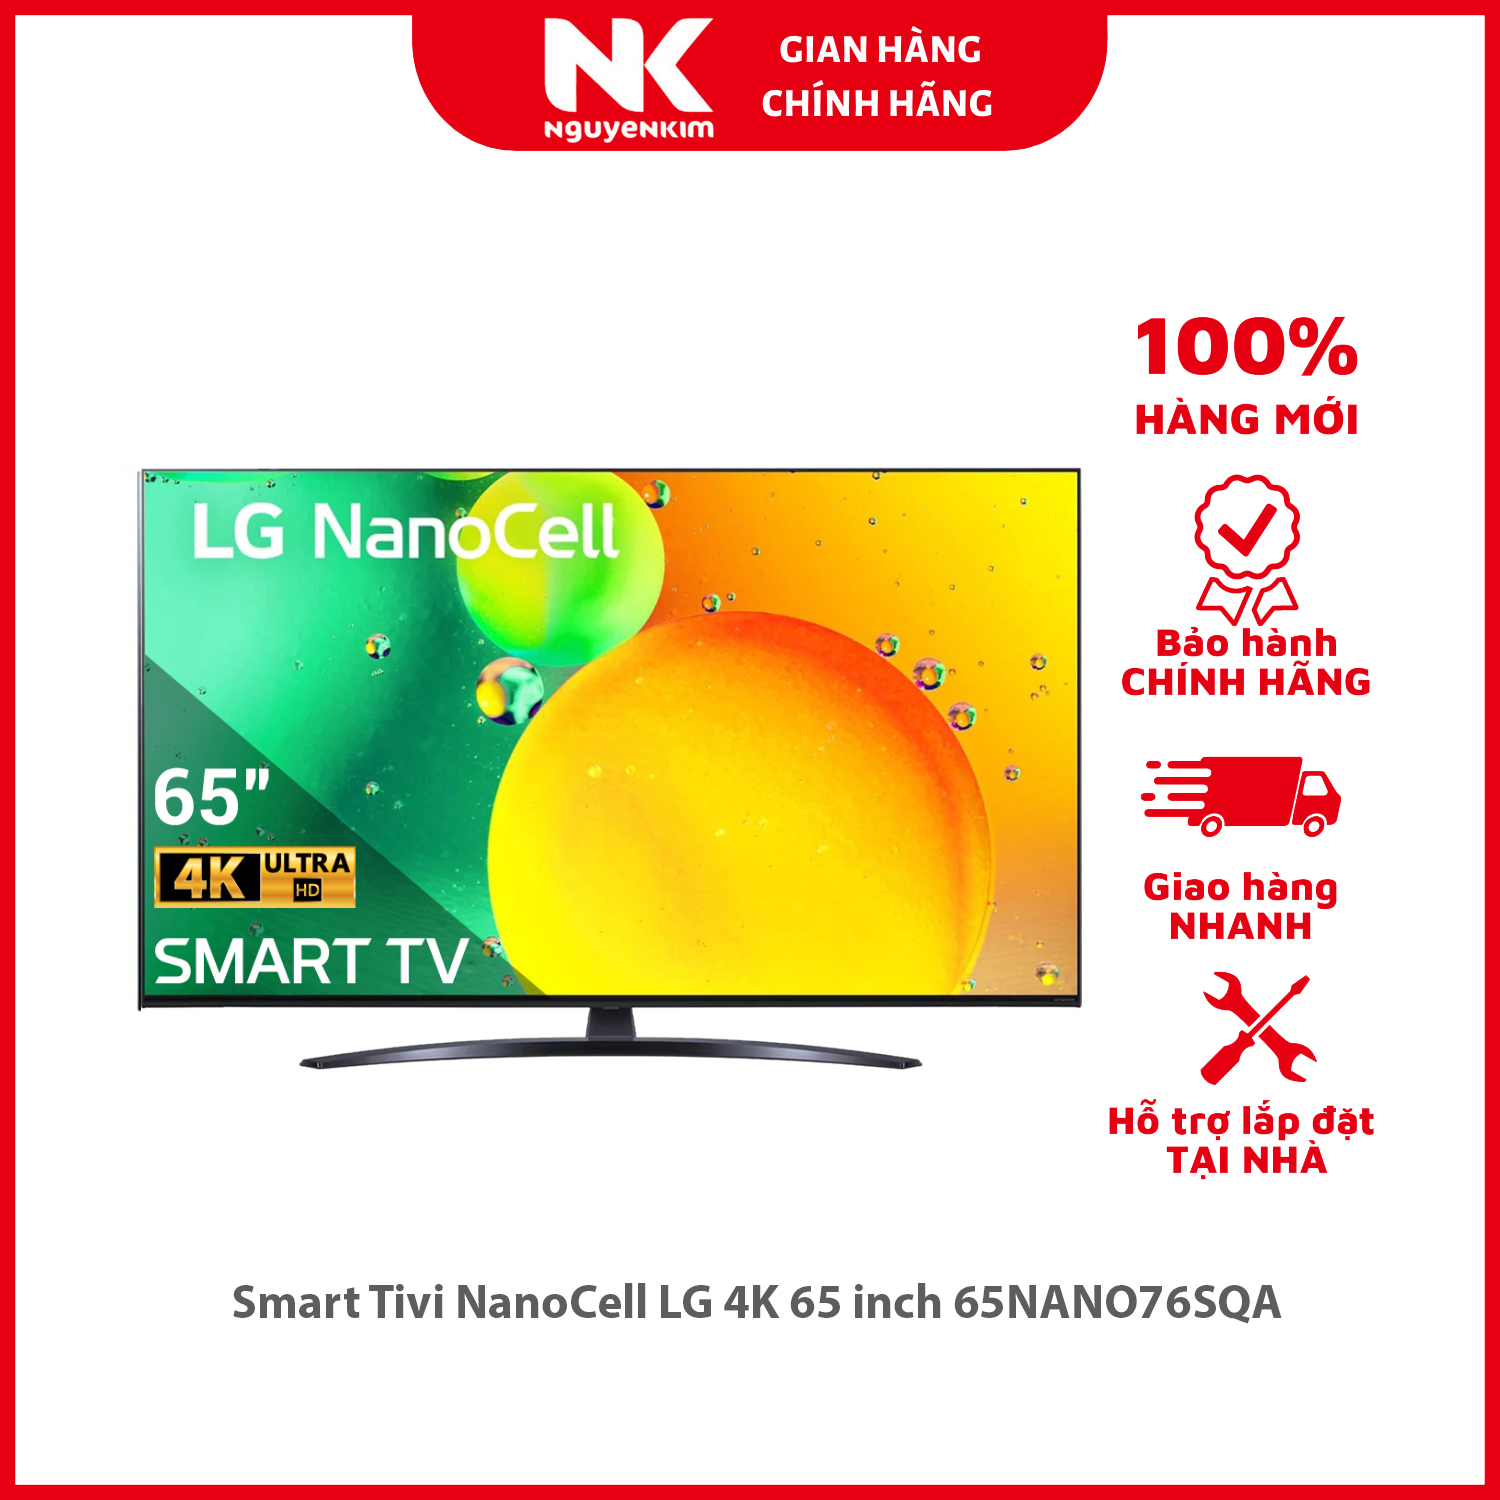 Smart Tivi NanoCell LG 4K 65 inch 65NANO76SQA - Hàng chính hãng